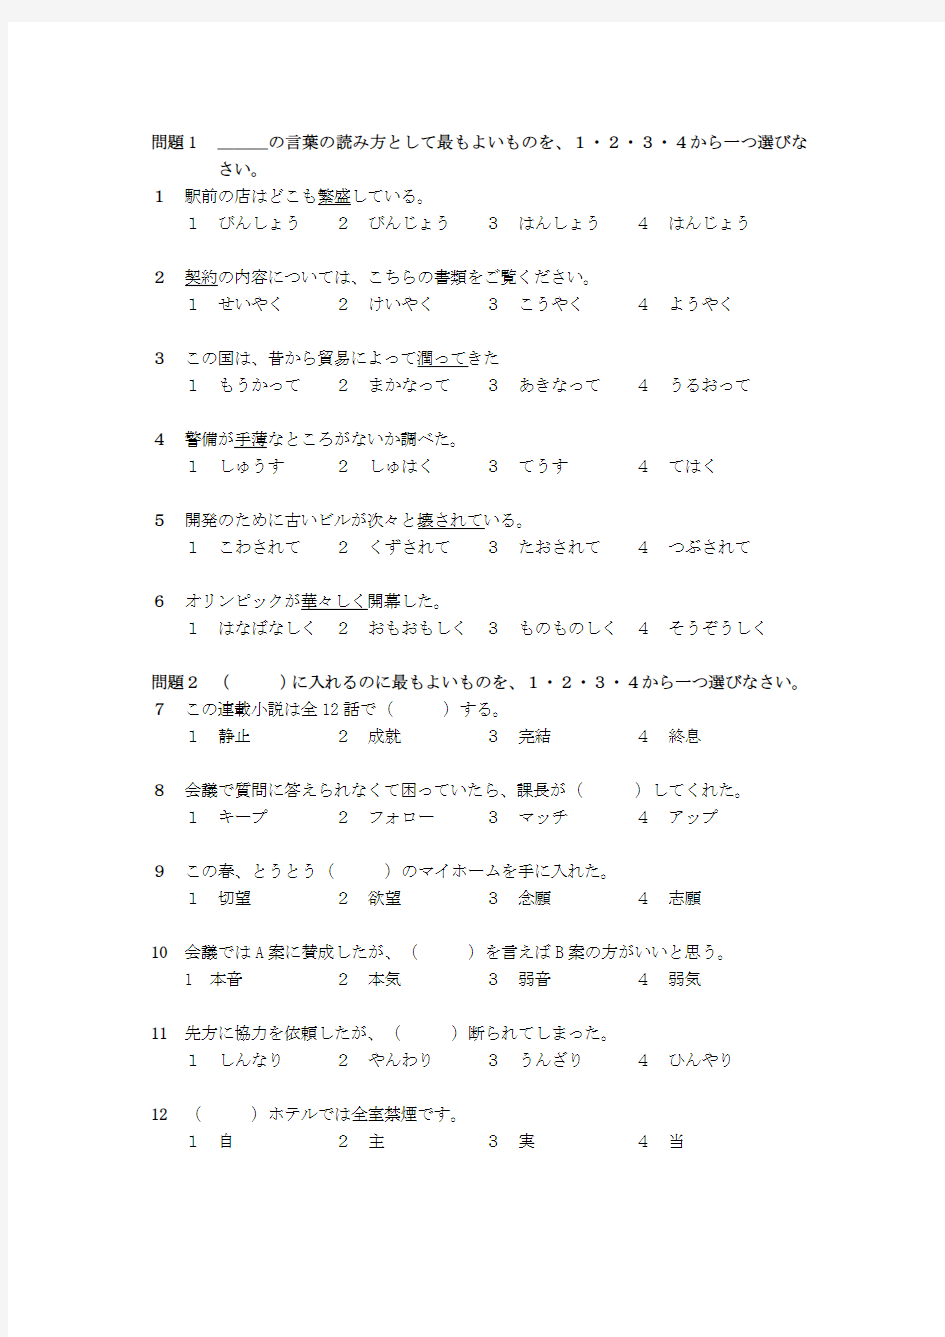 2010年7月日本语能力测试N1真题原版的